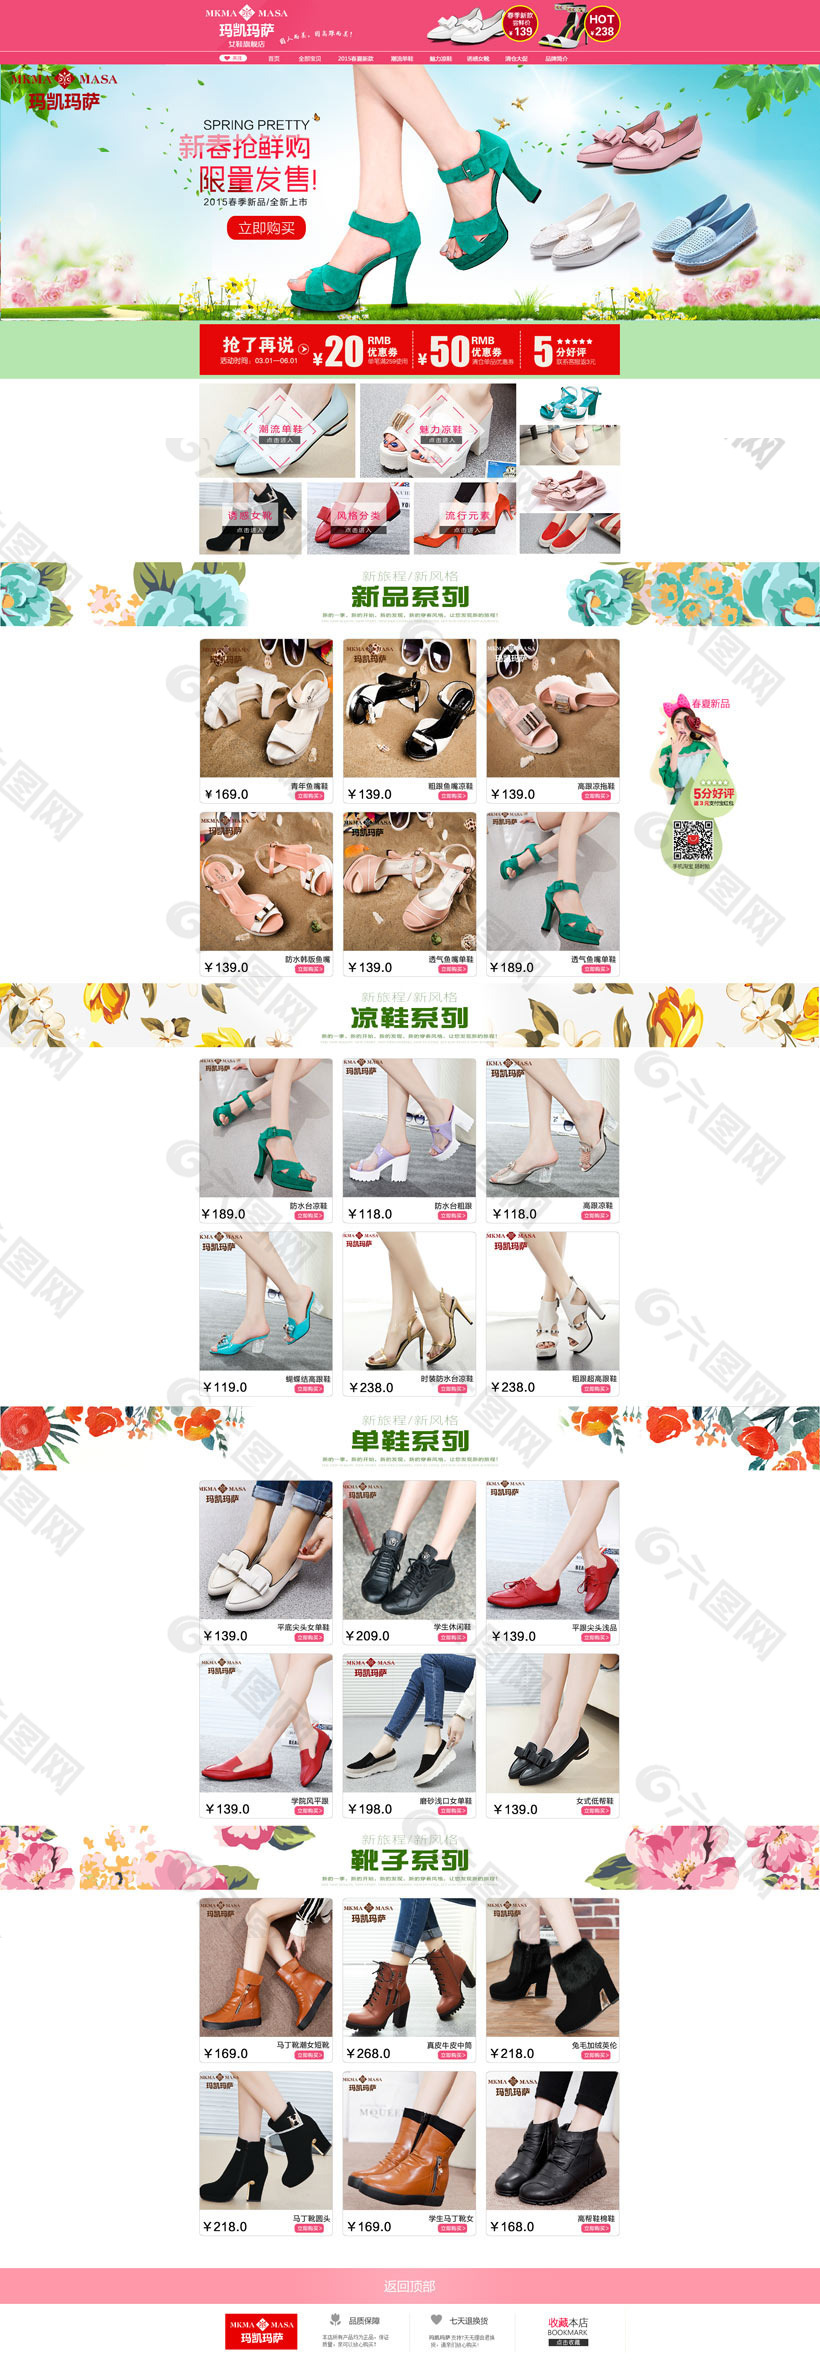 淘宝新品女鞋促销页面设计PSD素材